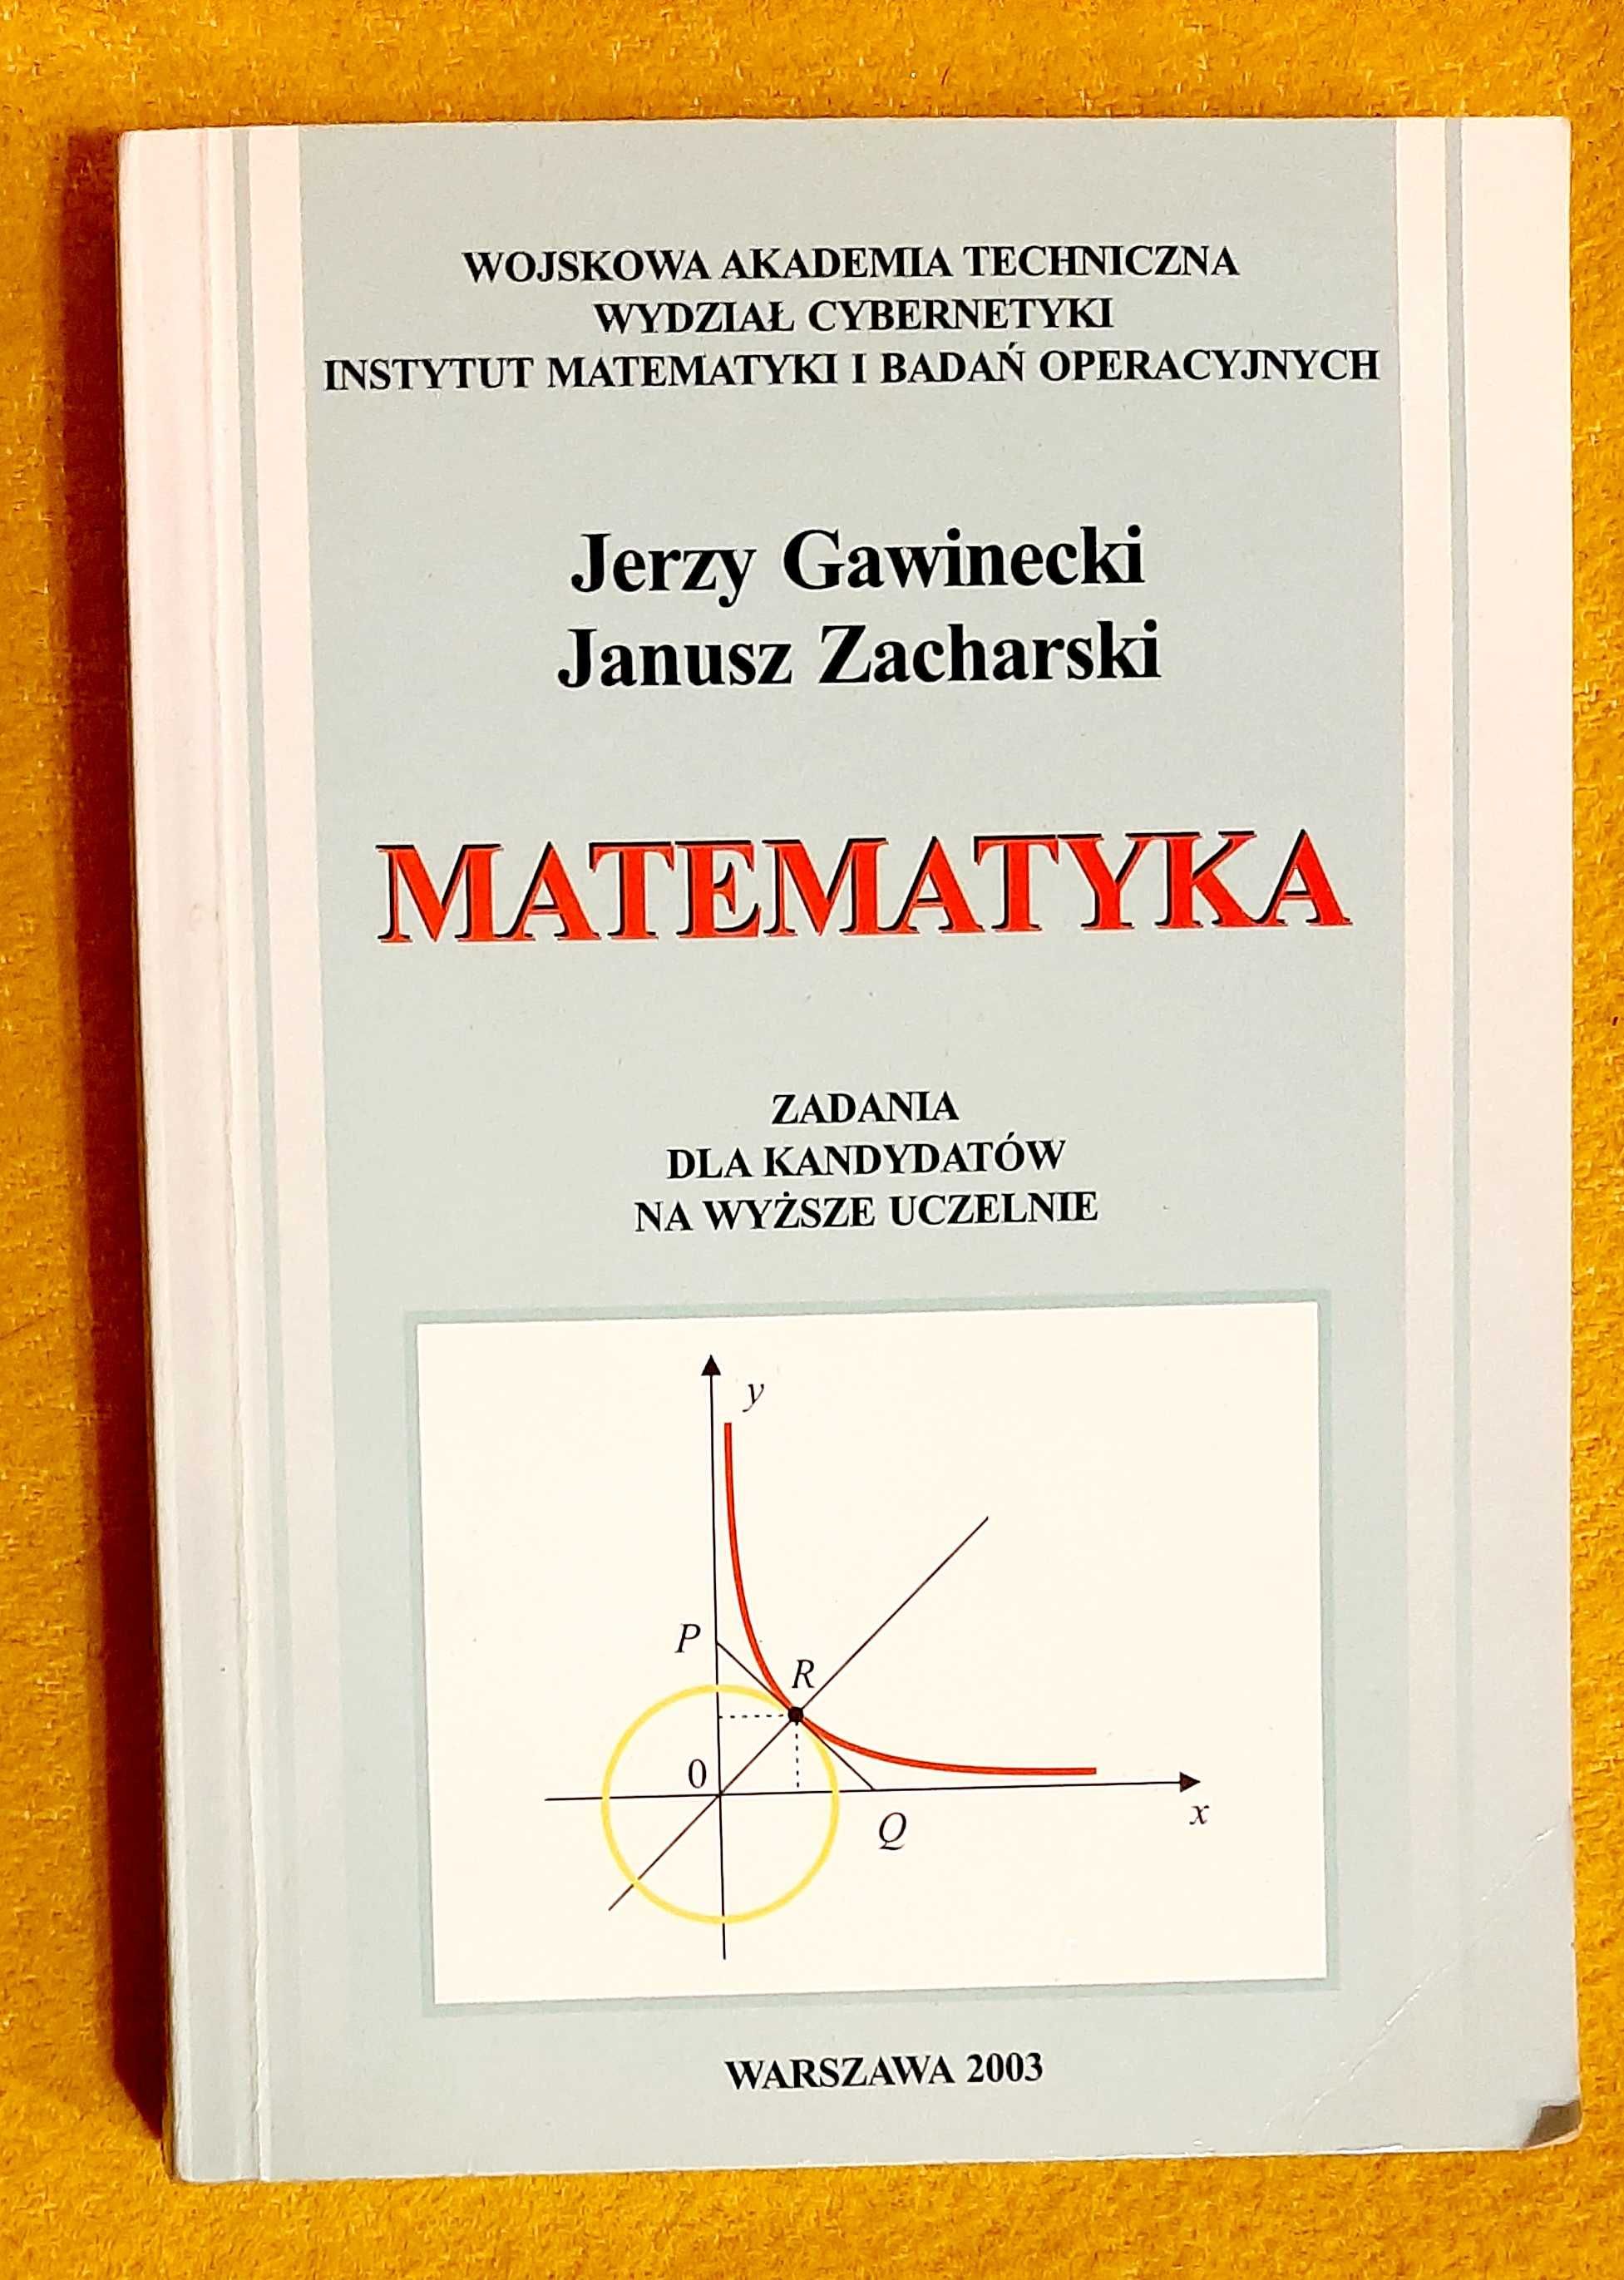 J. Gawinecki, Janusz Zacharski, Matematyka